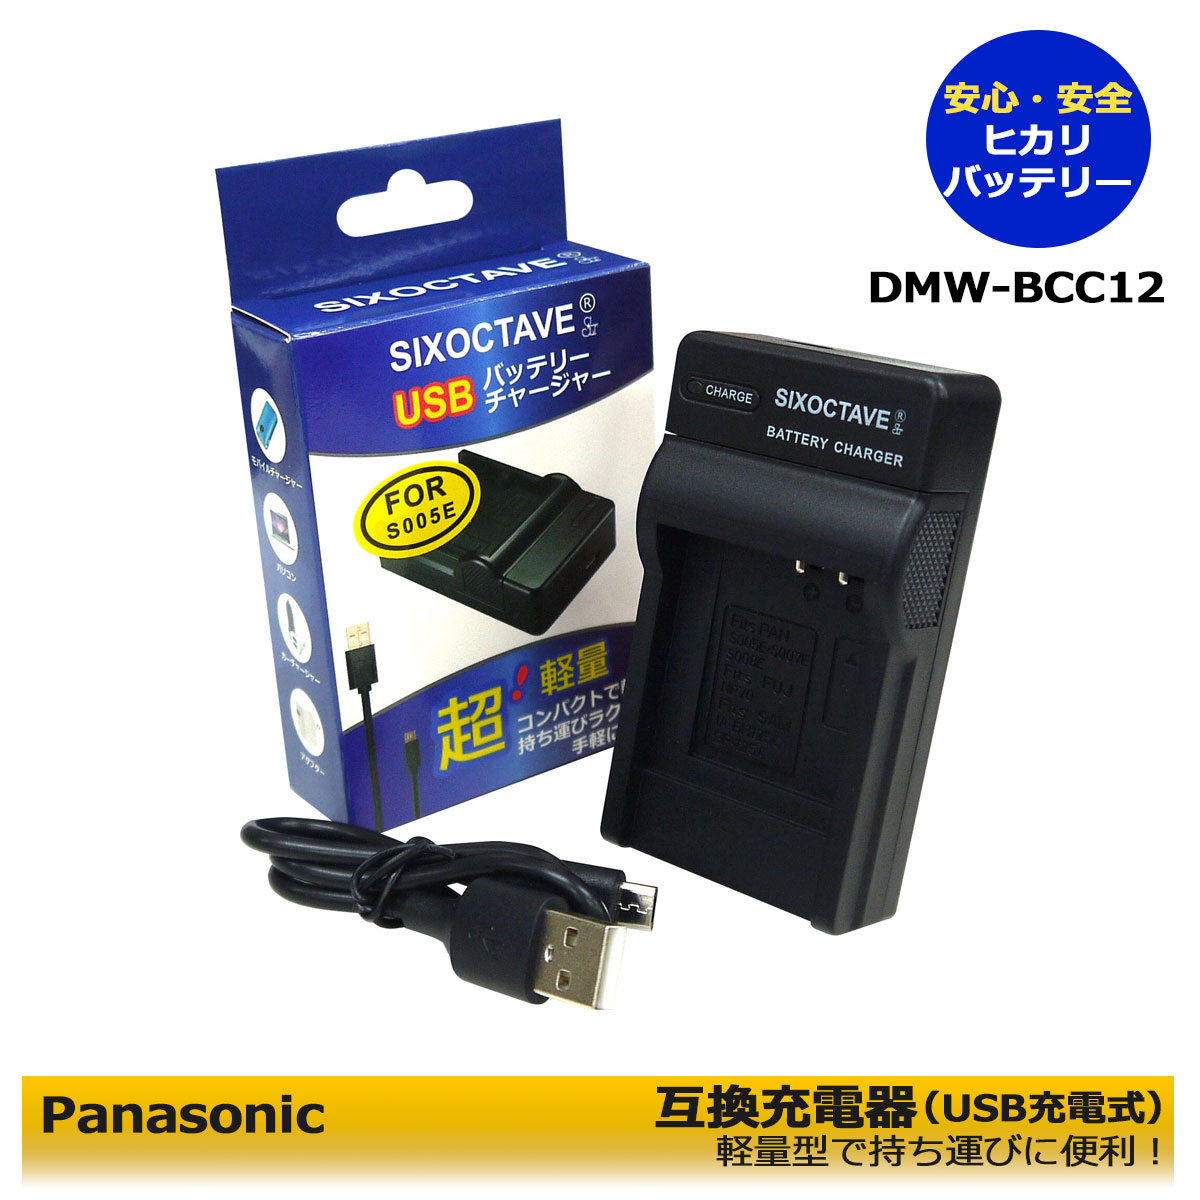 【お得なクーポン発行中！】Panasonic　DMW-BCC12　互換充電器 （USB充電タイプ）DMC-FX180S / DMC-FX180GK / DMC-FX50 / DMC-FX50-S / DMC-FX50-K / DMC-FX50-P / DMC-FX50EF / DMC-FX50EG / DMC-FX50EGM / DMC-LX1 / DMC-LX1-S / DMC-LX1-K / DMC-LX1BS